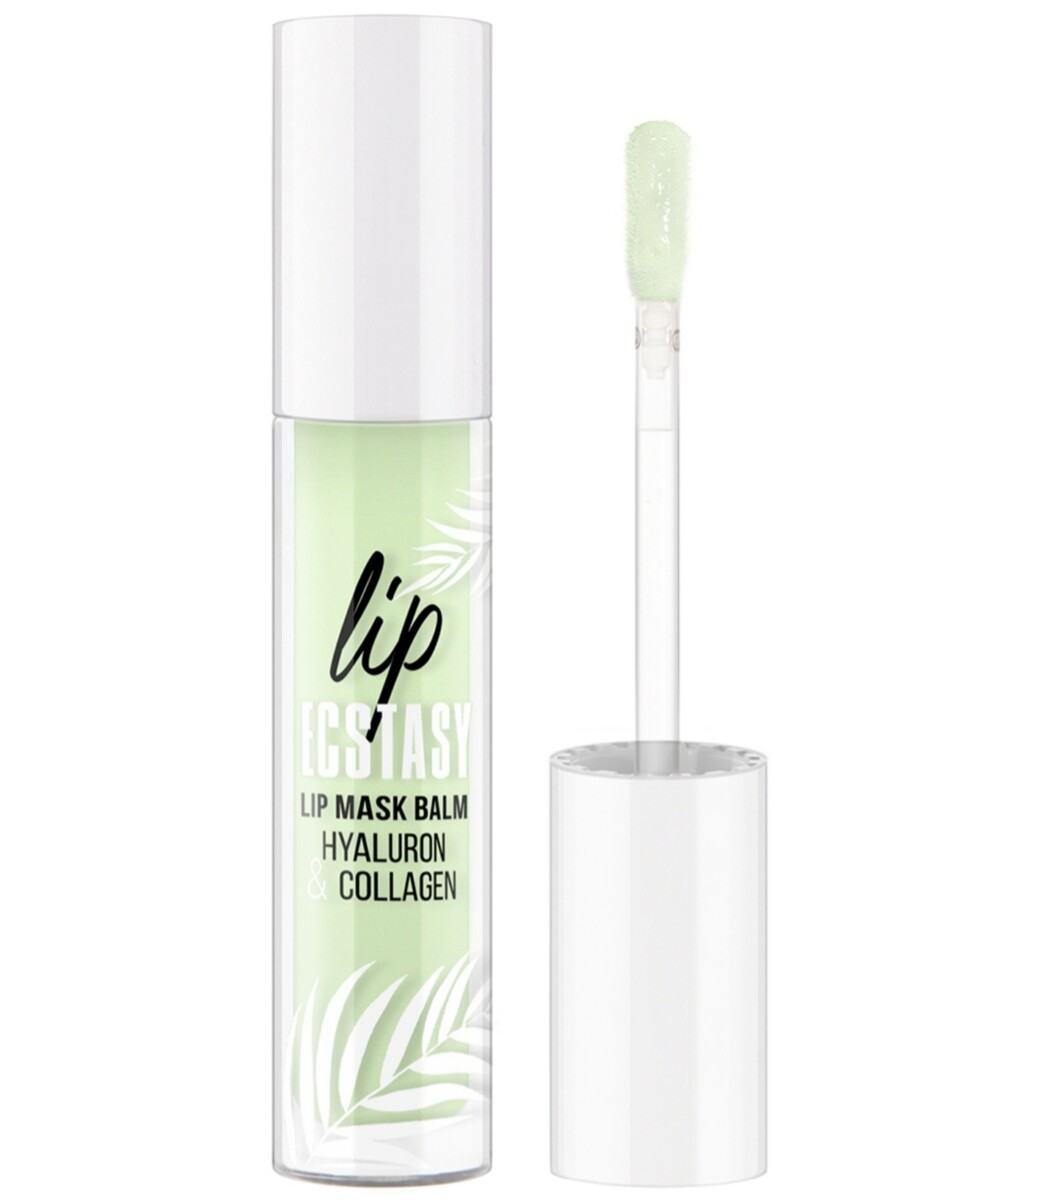 Luxvisage маска-бальзам для губ lip ecstasy hyaluron & collagen тон 603 mint 3,3г Lux Visage